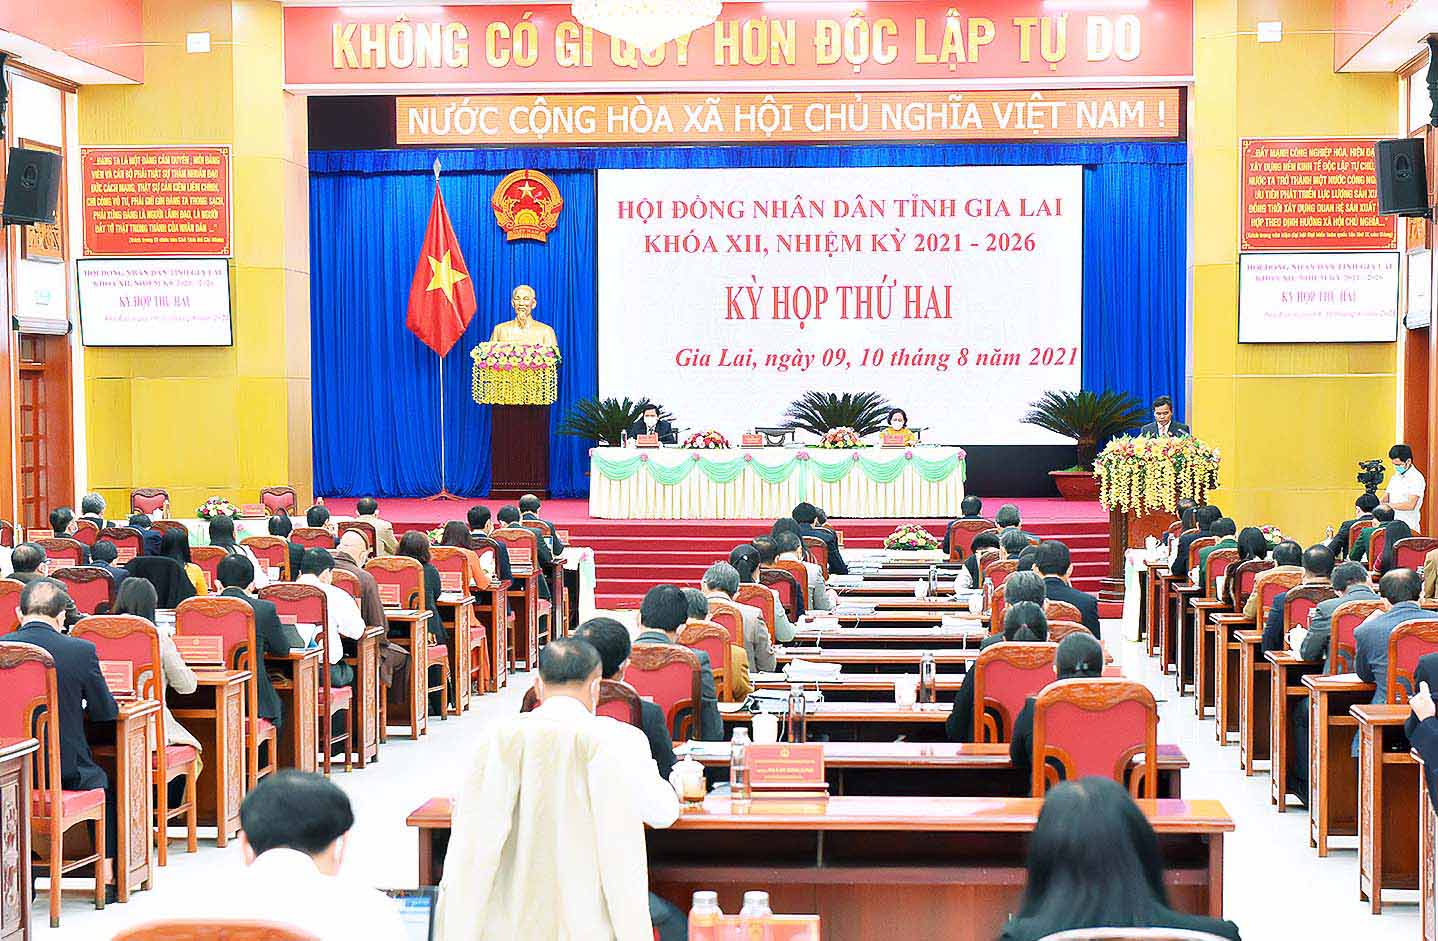 Khai mạc kỳ họp thứ 2 HĐND tỉnh Gia Lai khóa XII nhiệm kỳ 2021-2026